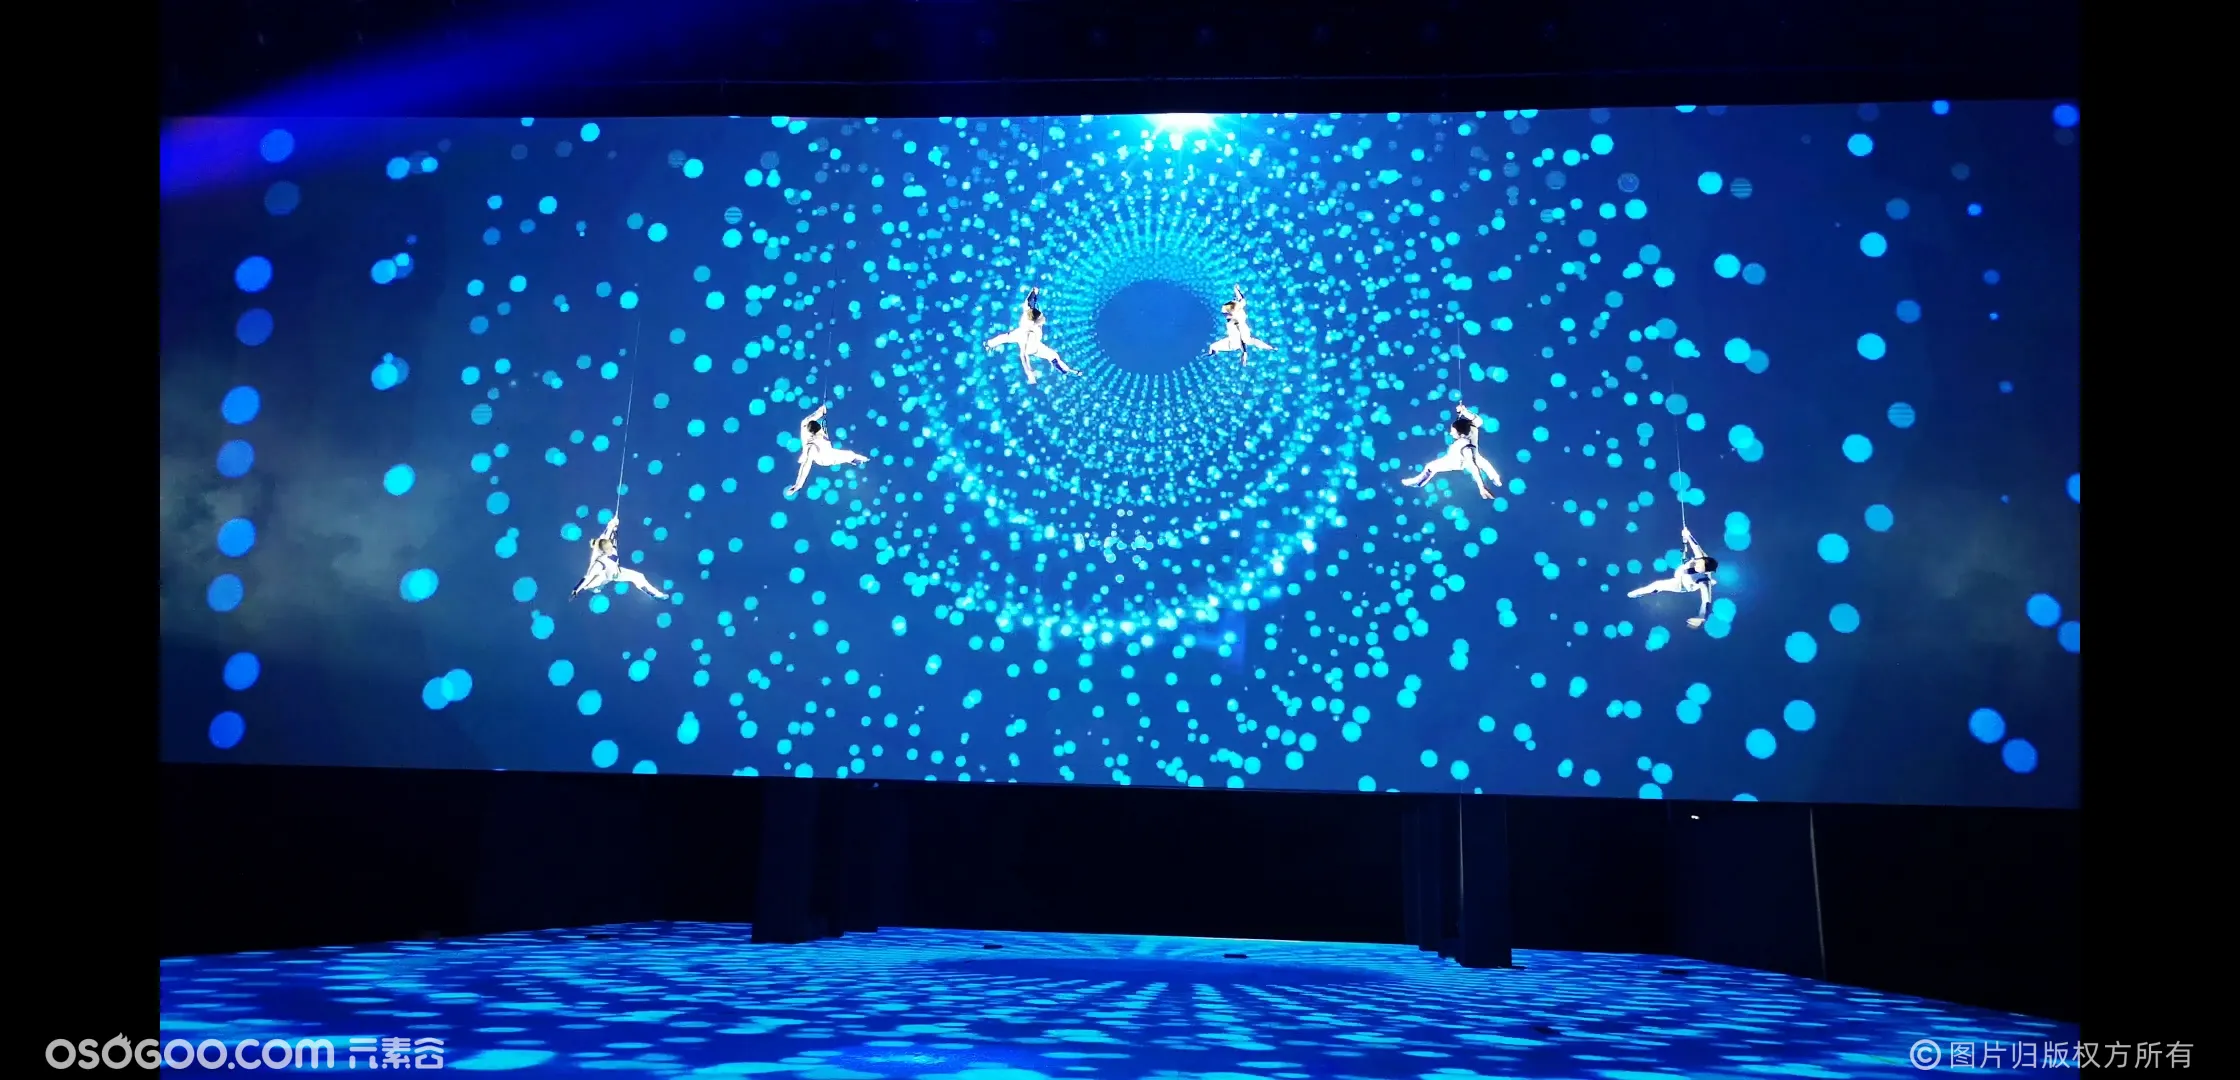 开场威亚 威亚视频互动 3D威压视频互动秀 空中艺术表演 